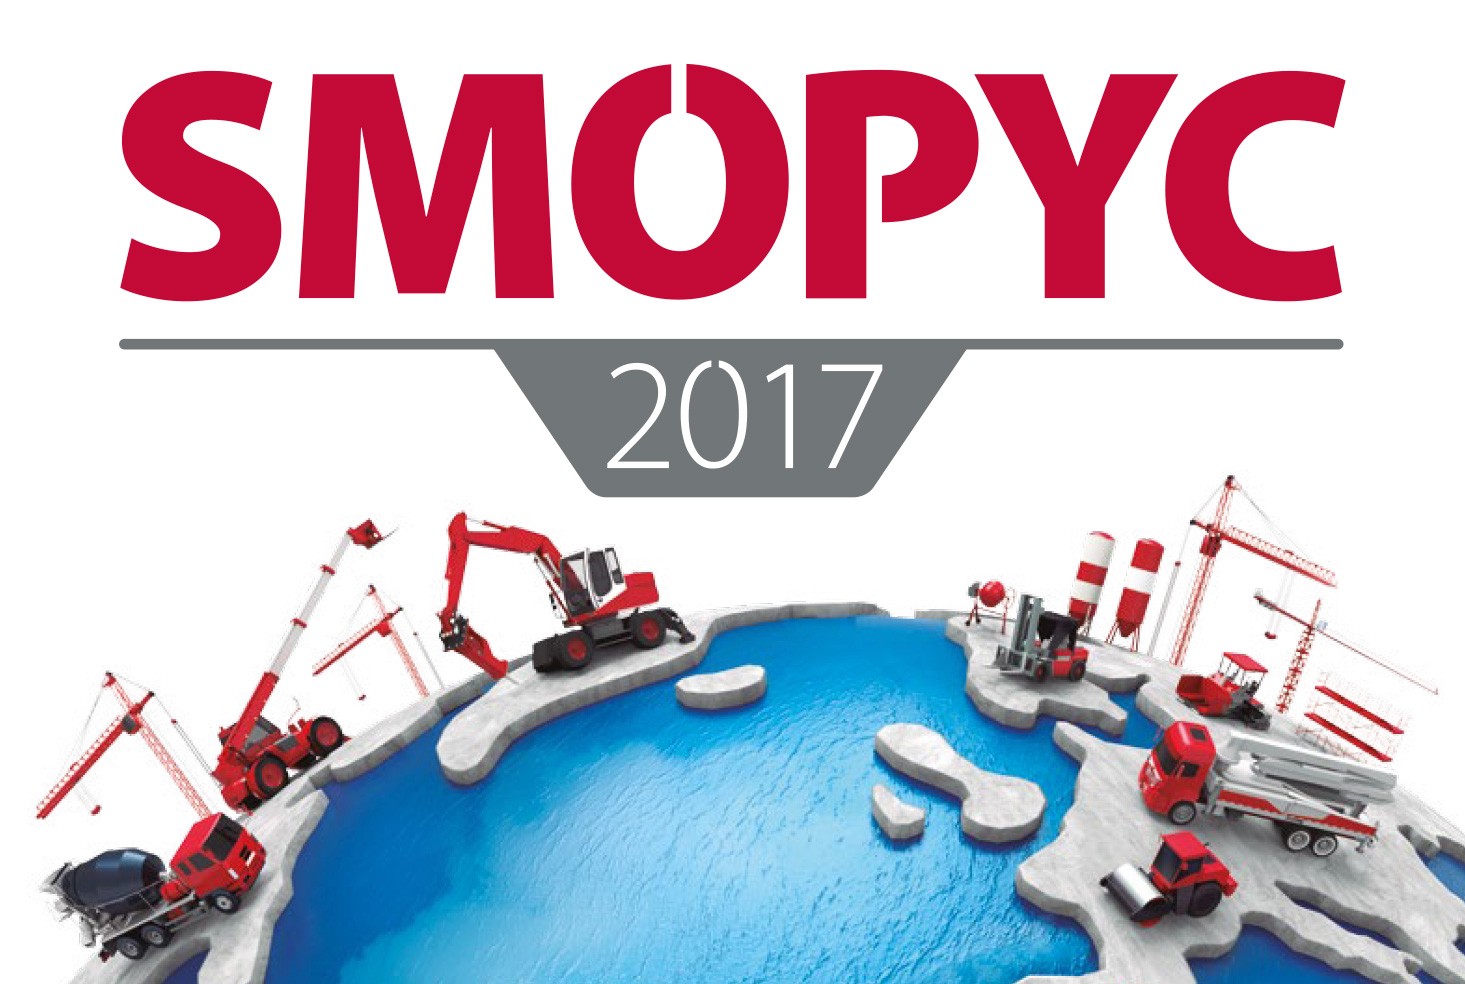 SMOPYC continua sumando marcas y alcanza los 64.000 metros cuadrados superficie 